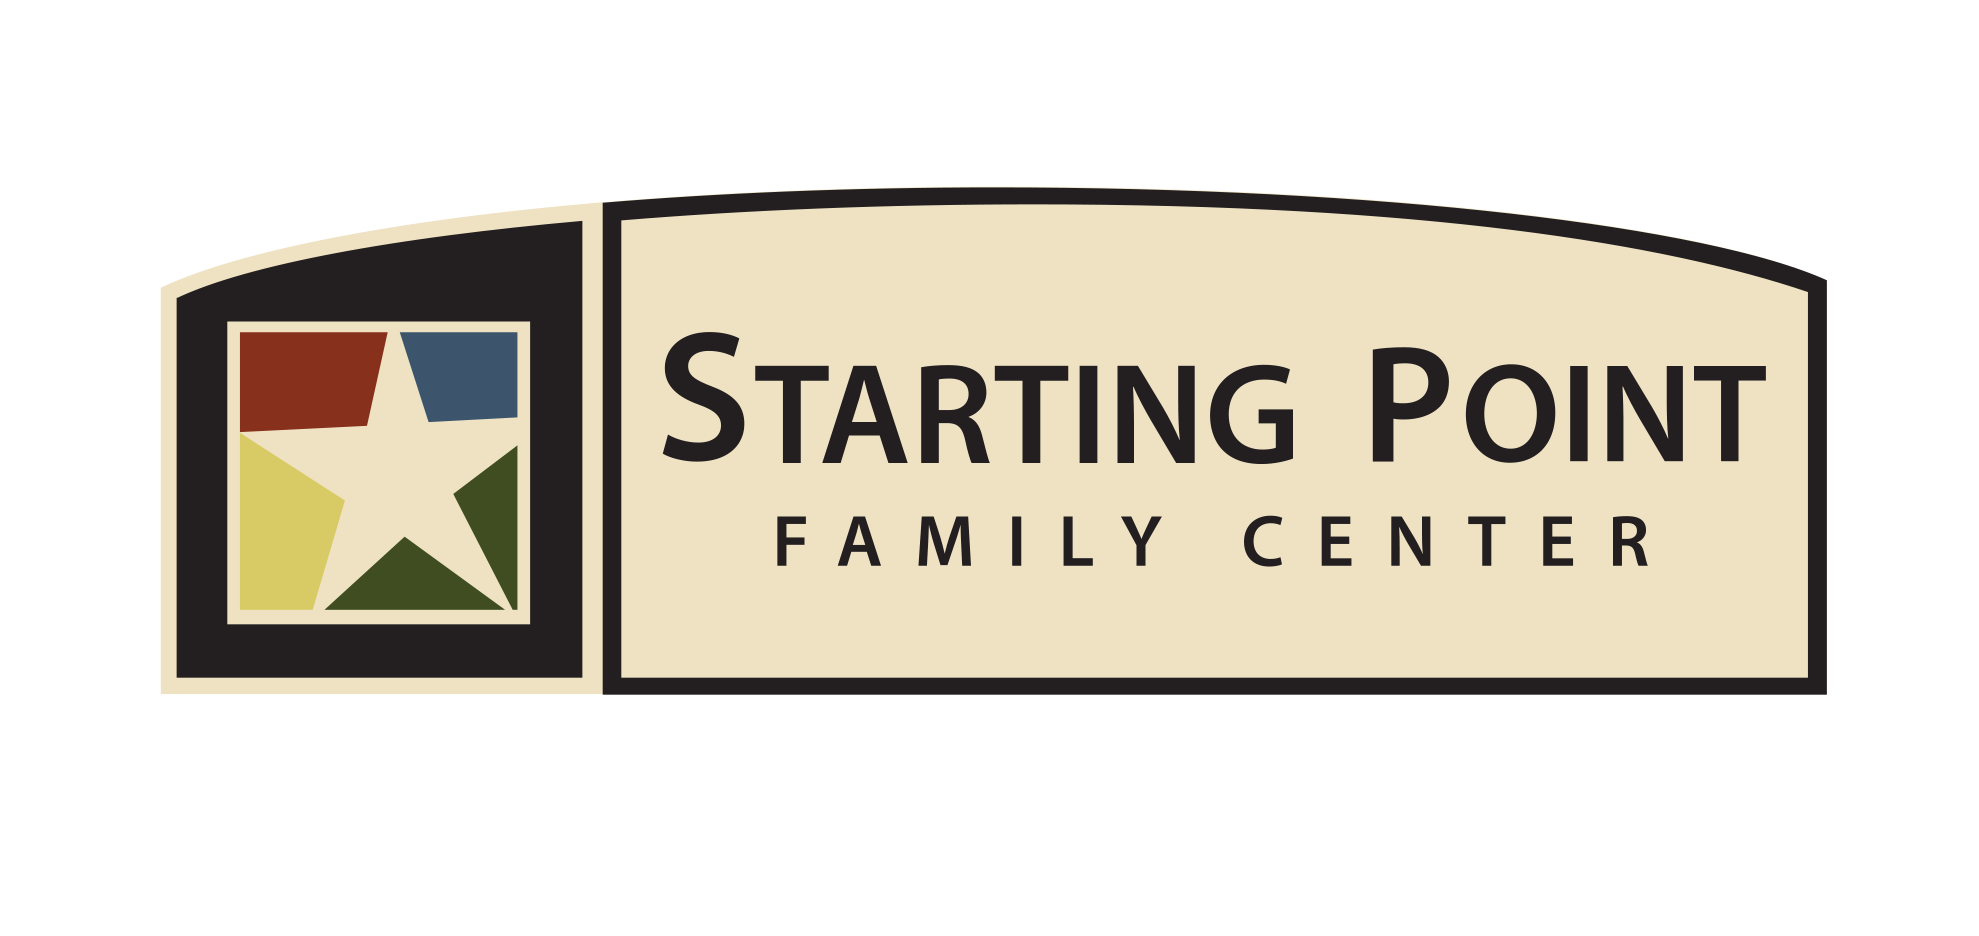 Starting Point Family Center logo